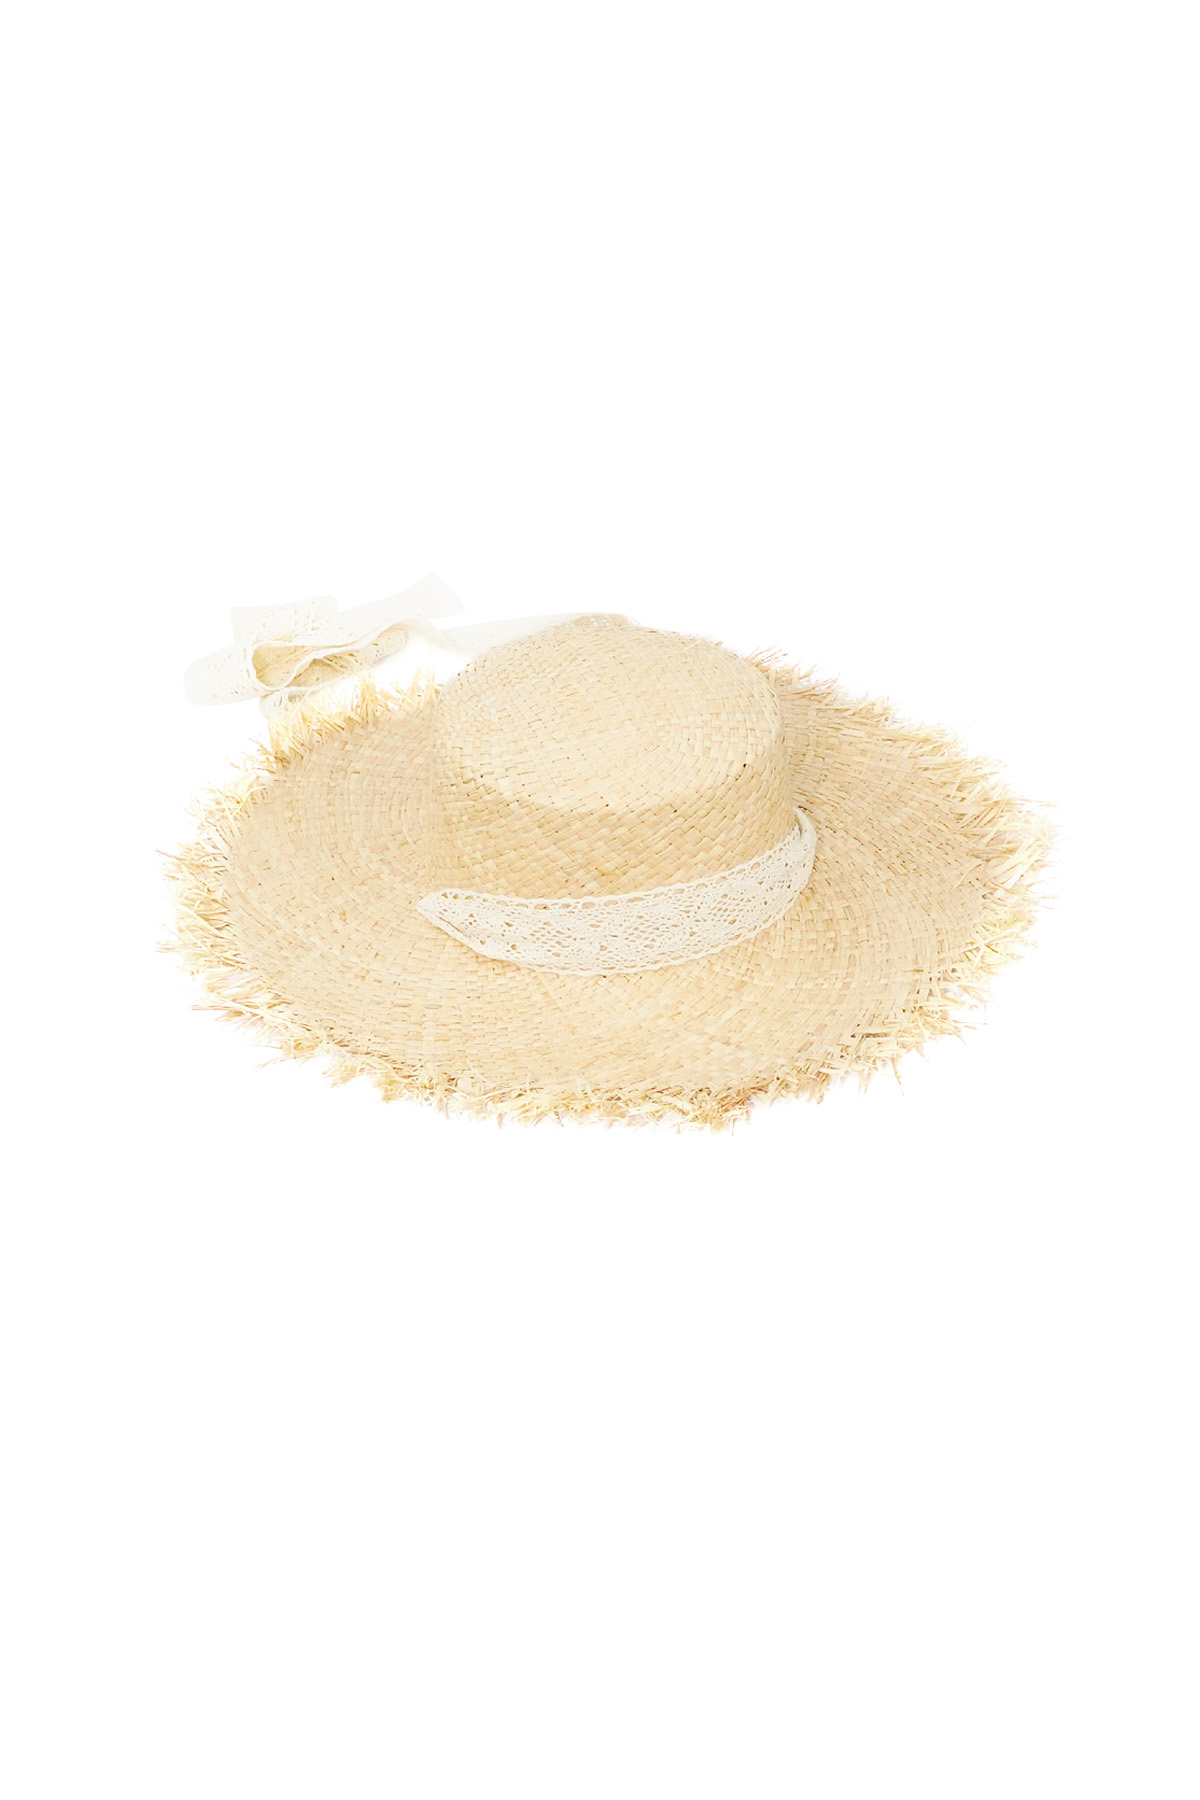 Cappello da spiaggia - bianco sporco h5 